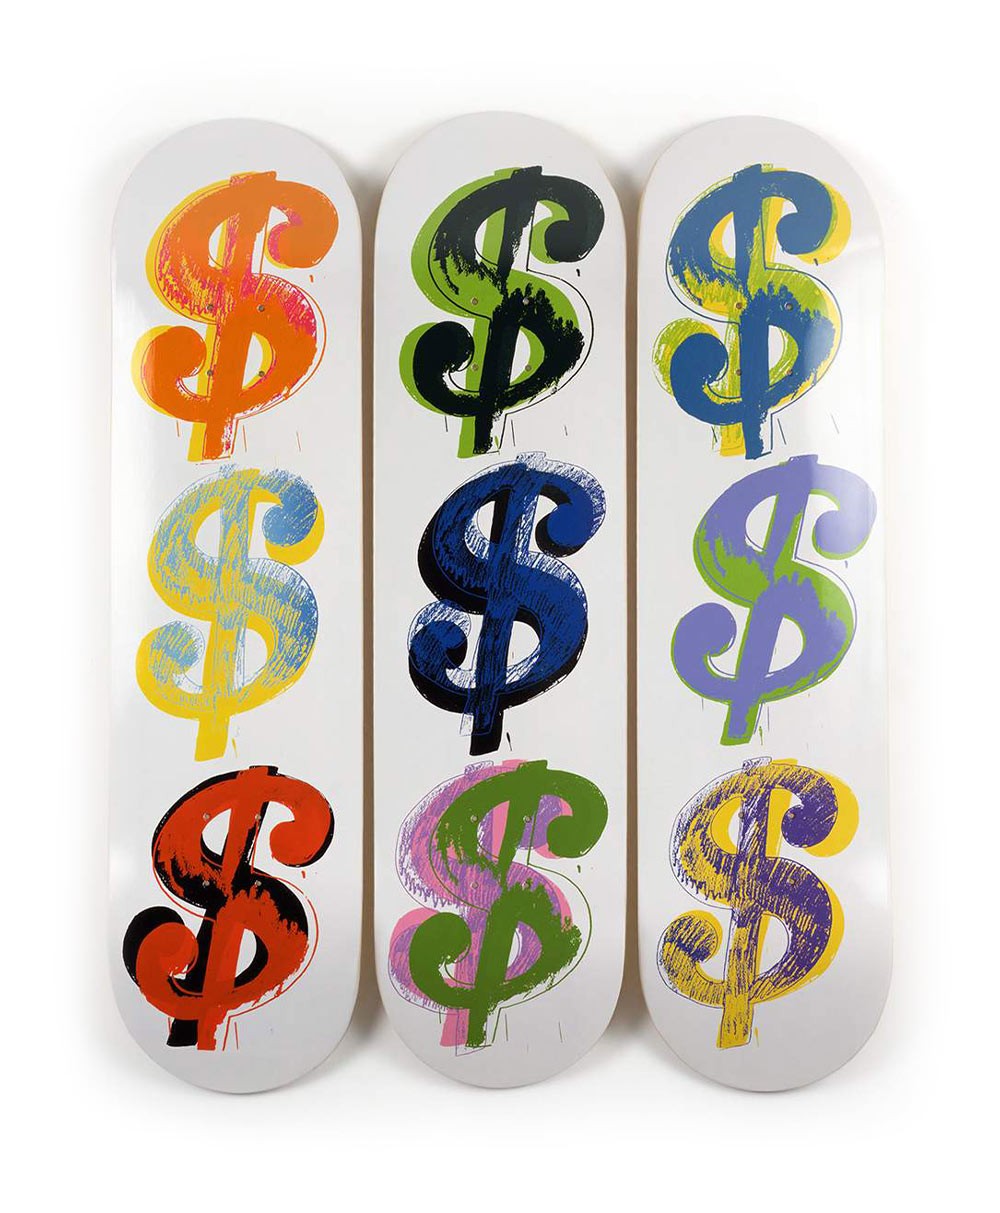 Produktbild "Dollar Signs (9)" designed by Andy Warhol von The Skateroom im RAUM Conceptstore